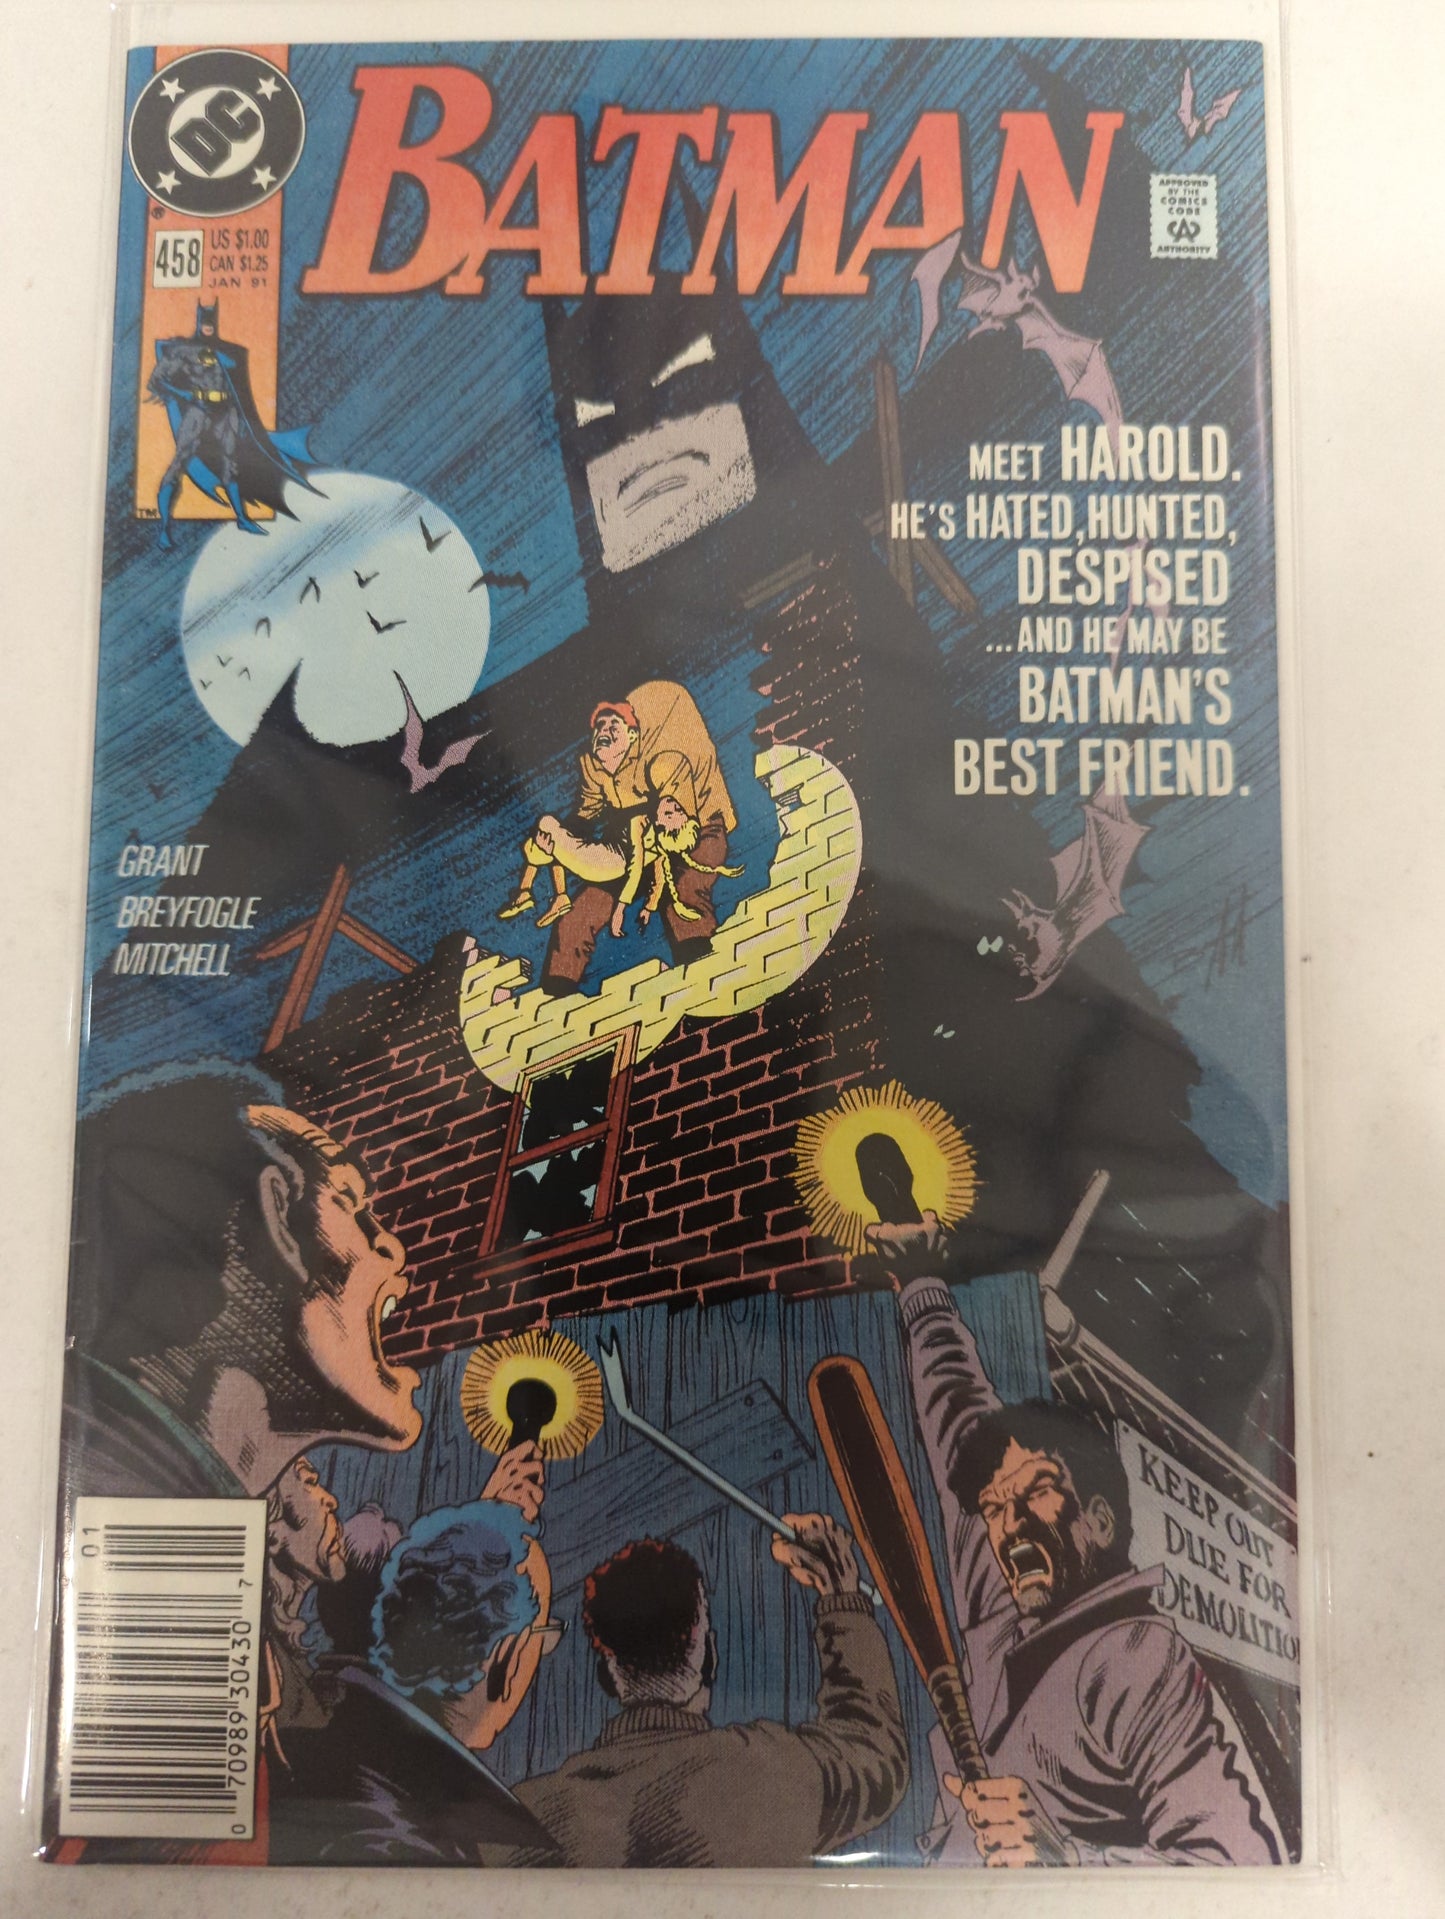 Batman #458 Newsstand